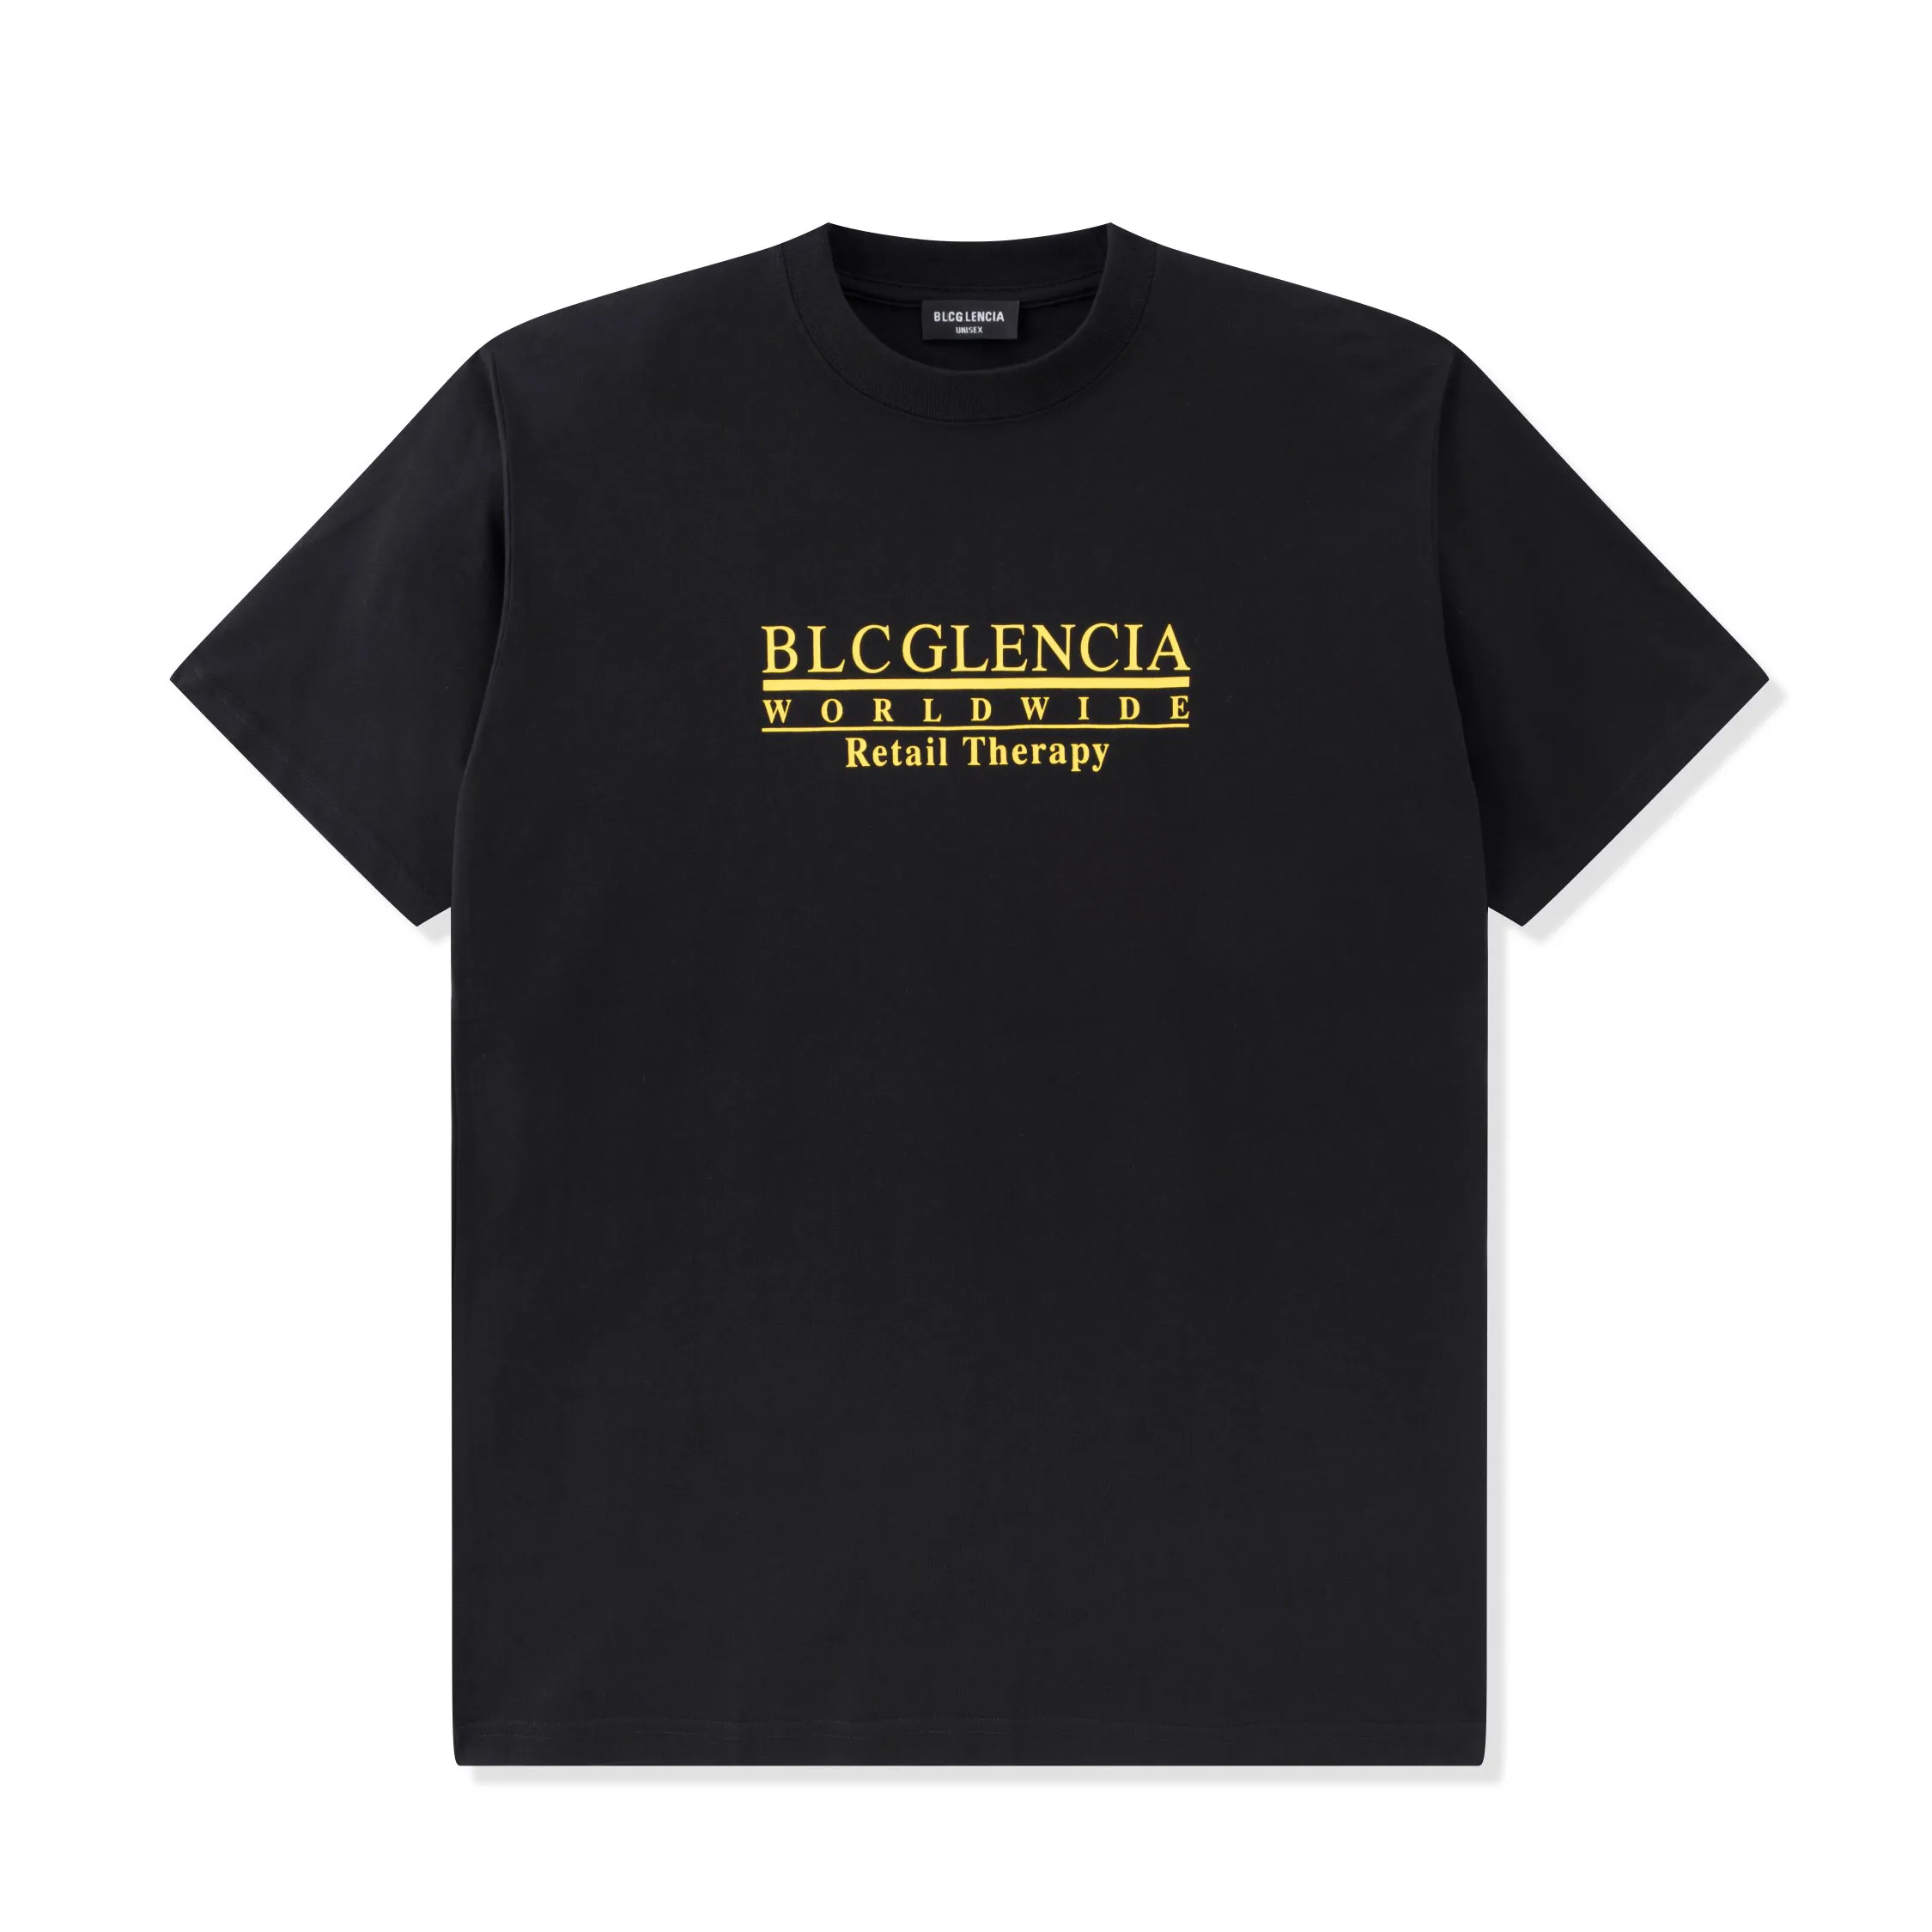 BLCG LENCIA UNISEX Summer Camisetas para mujer Peso pesado de gran tamaño 100% Algodón Triple Puntatch Manodhip Mankship Topes de talla grande Tops SM130269